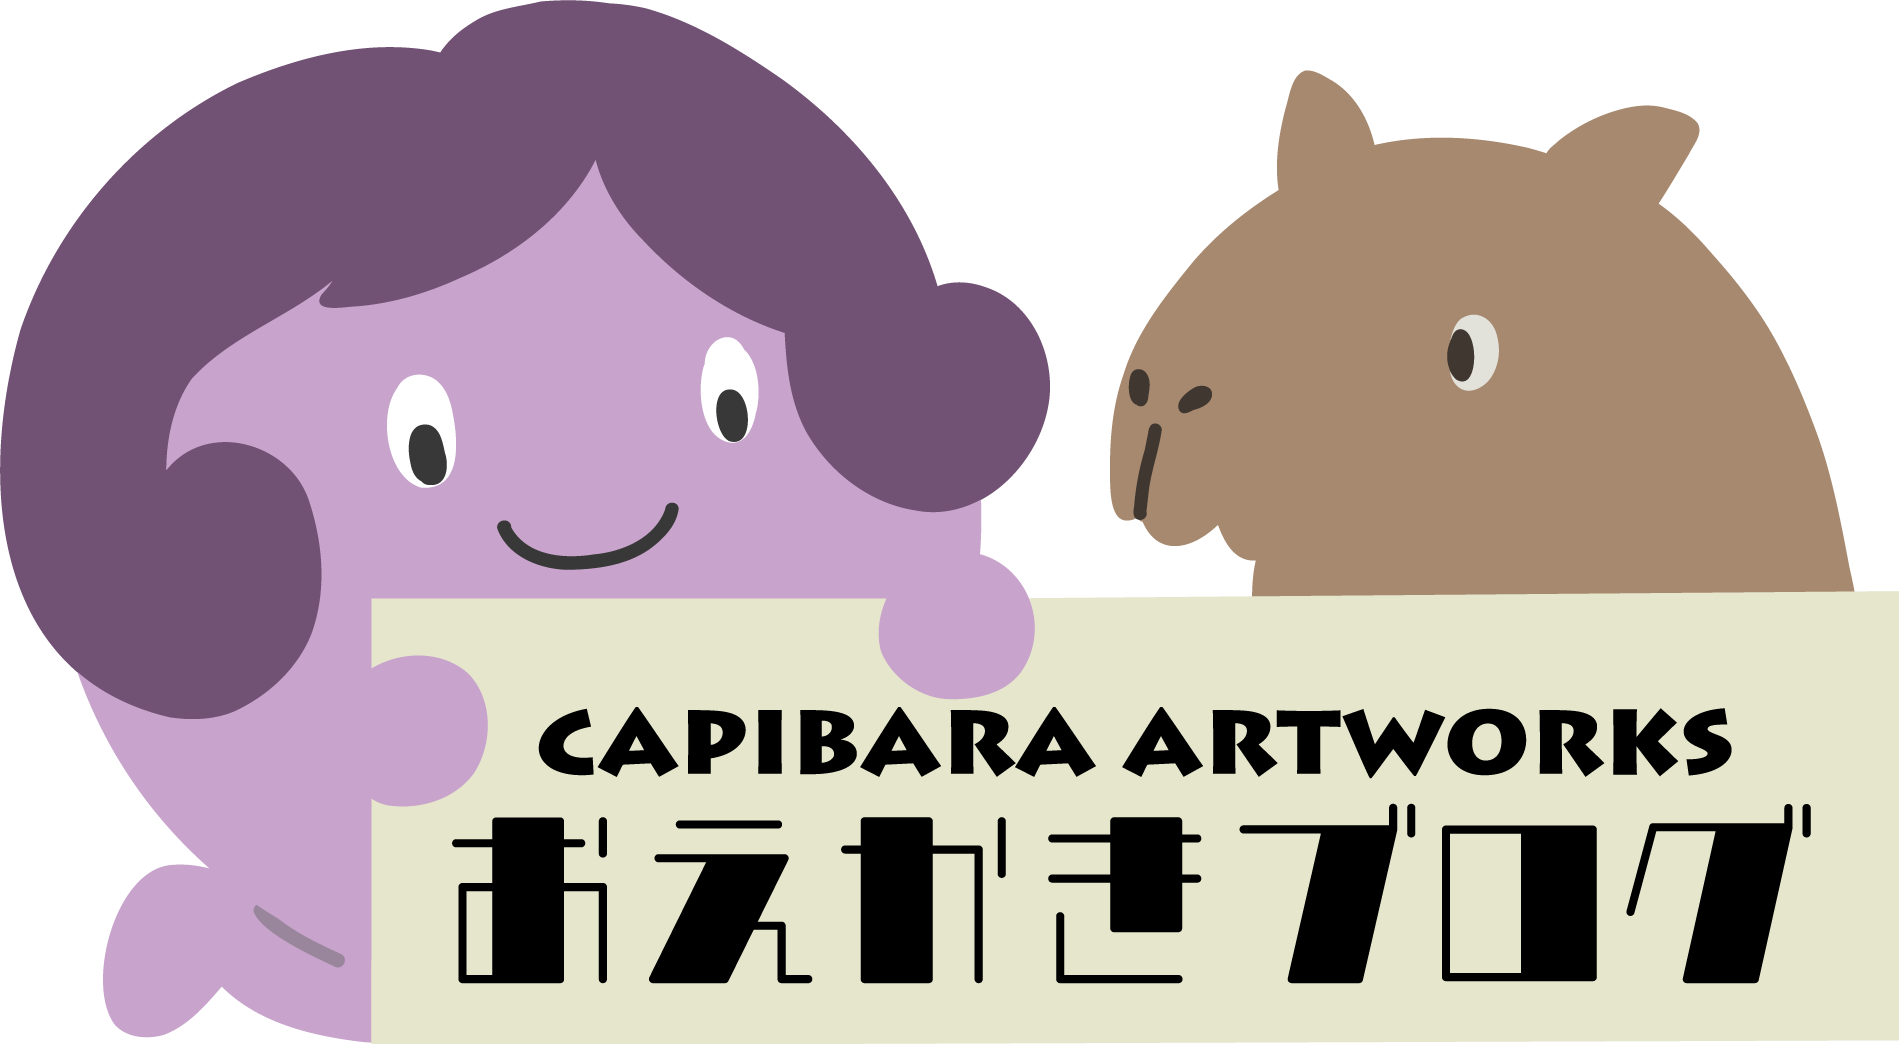 capibara artworks